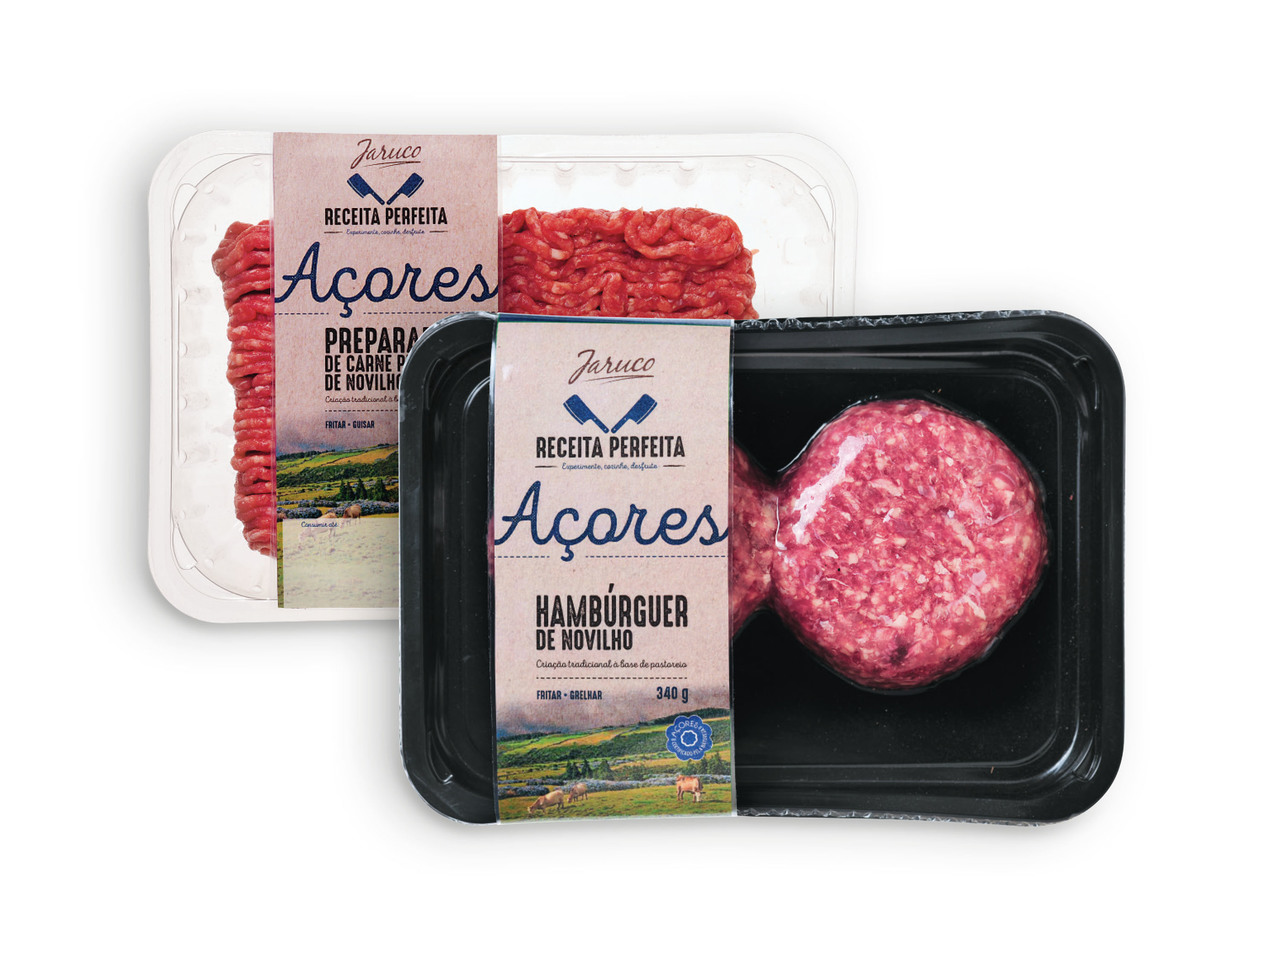 JARUCO(R) Hambúrguer / Preparado de Carne Picada de Novilho dos Açores